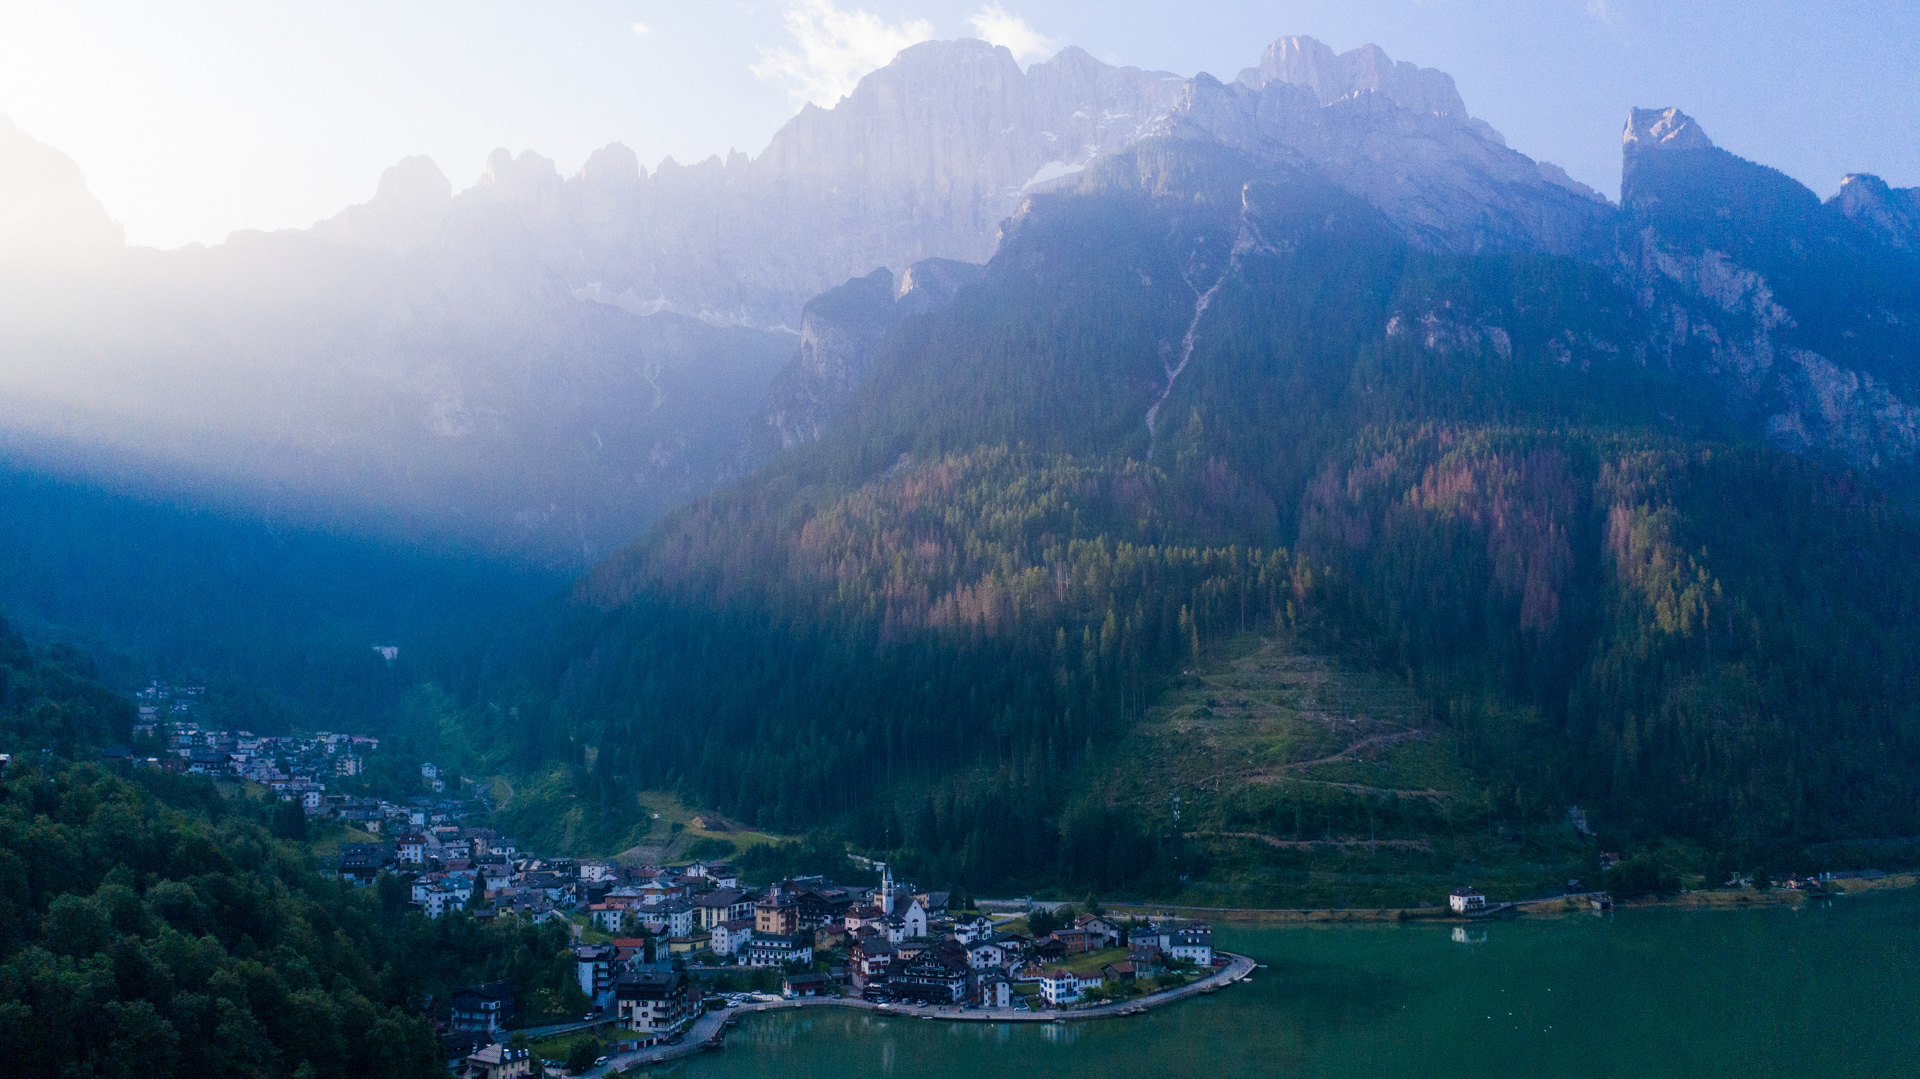 Alpine Morgenstimmung über unserem Etappenort Alleghe mit der Civetta im Hintergrund.